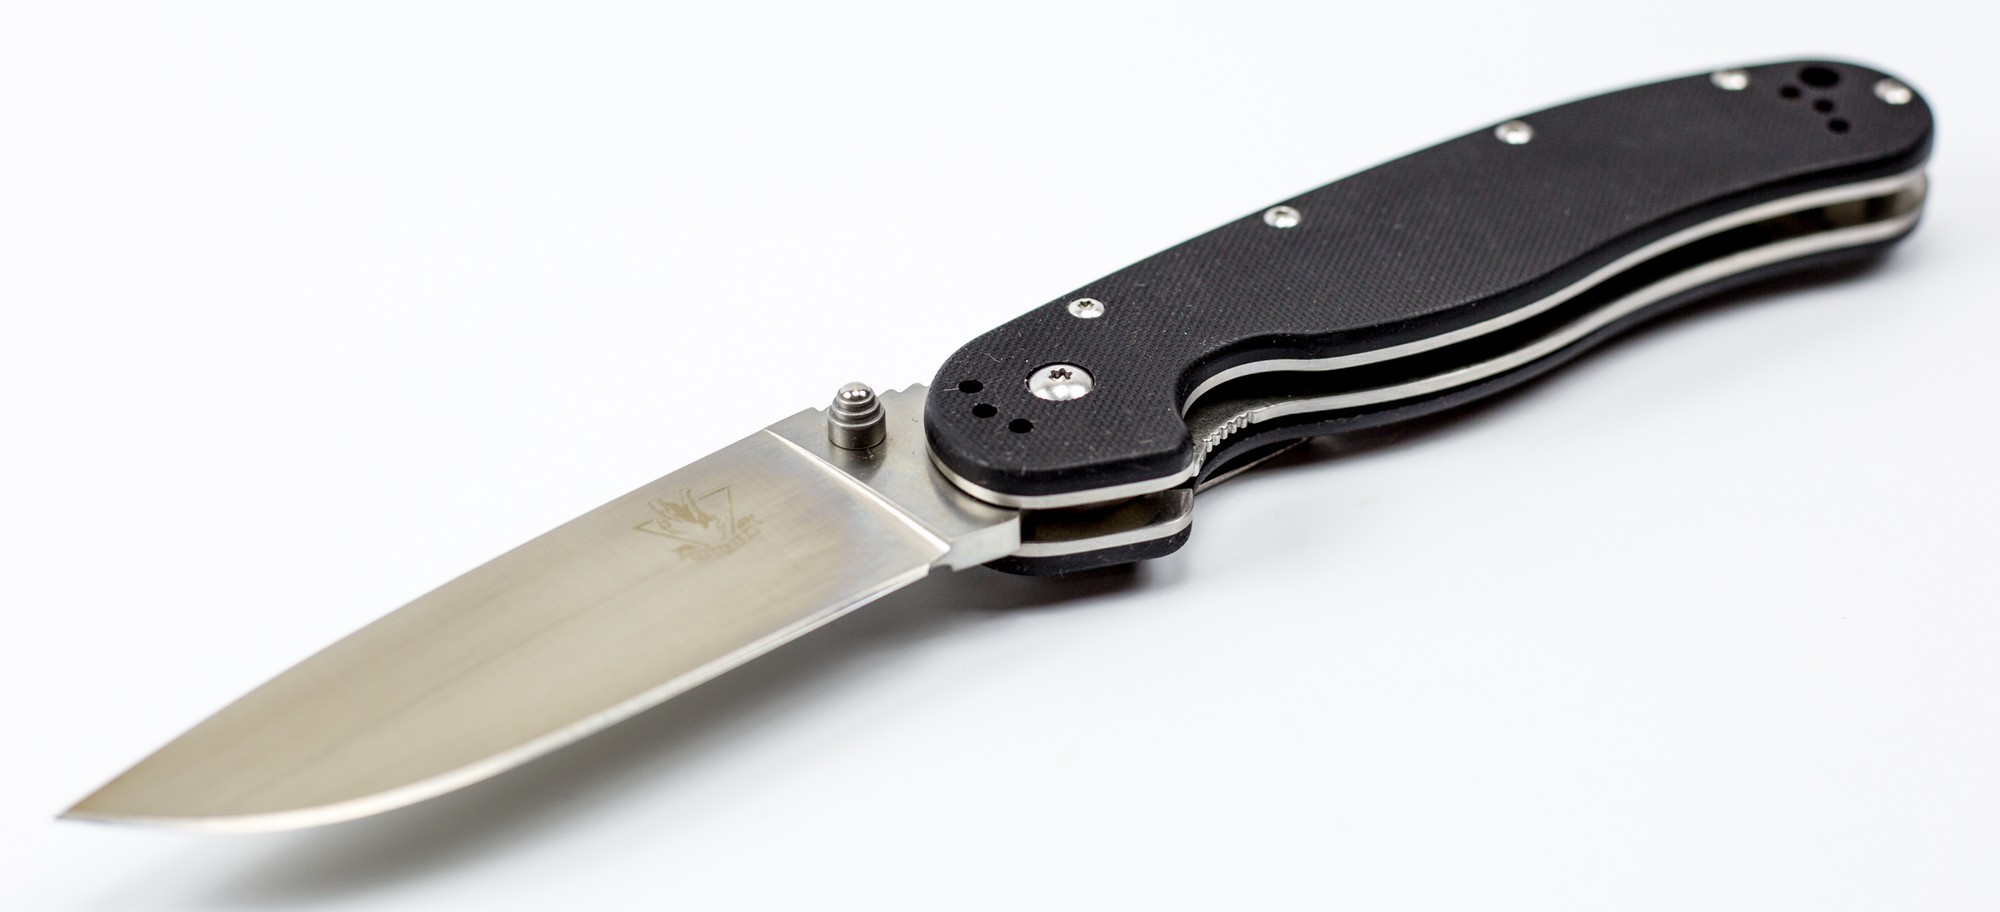 Складной нож Steelclaw Крыса 1, сталь AUS-8, RAT-01 по цене 2290.0 руб .